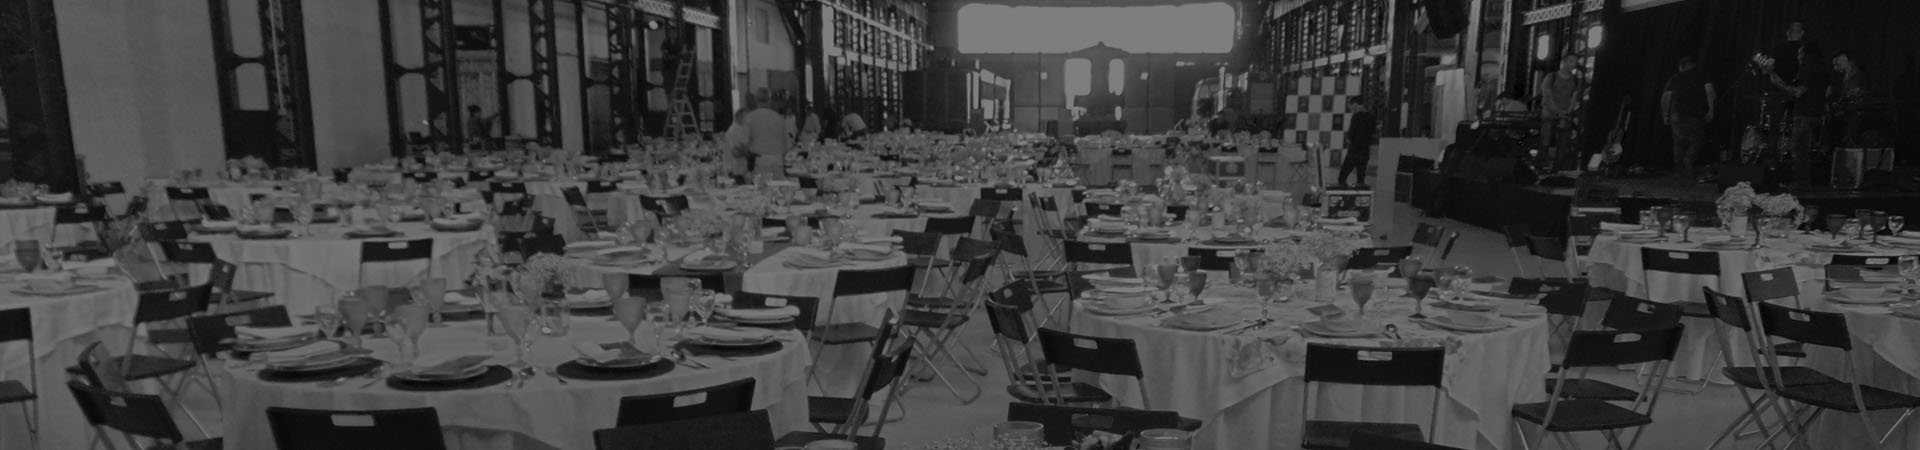 Photographie de Oficinas do Vapor avec tables et chaises préparées pour accueillir un banquet